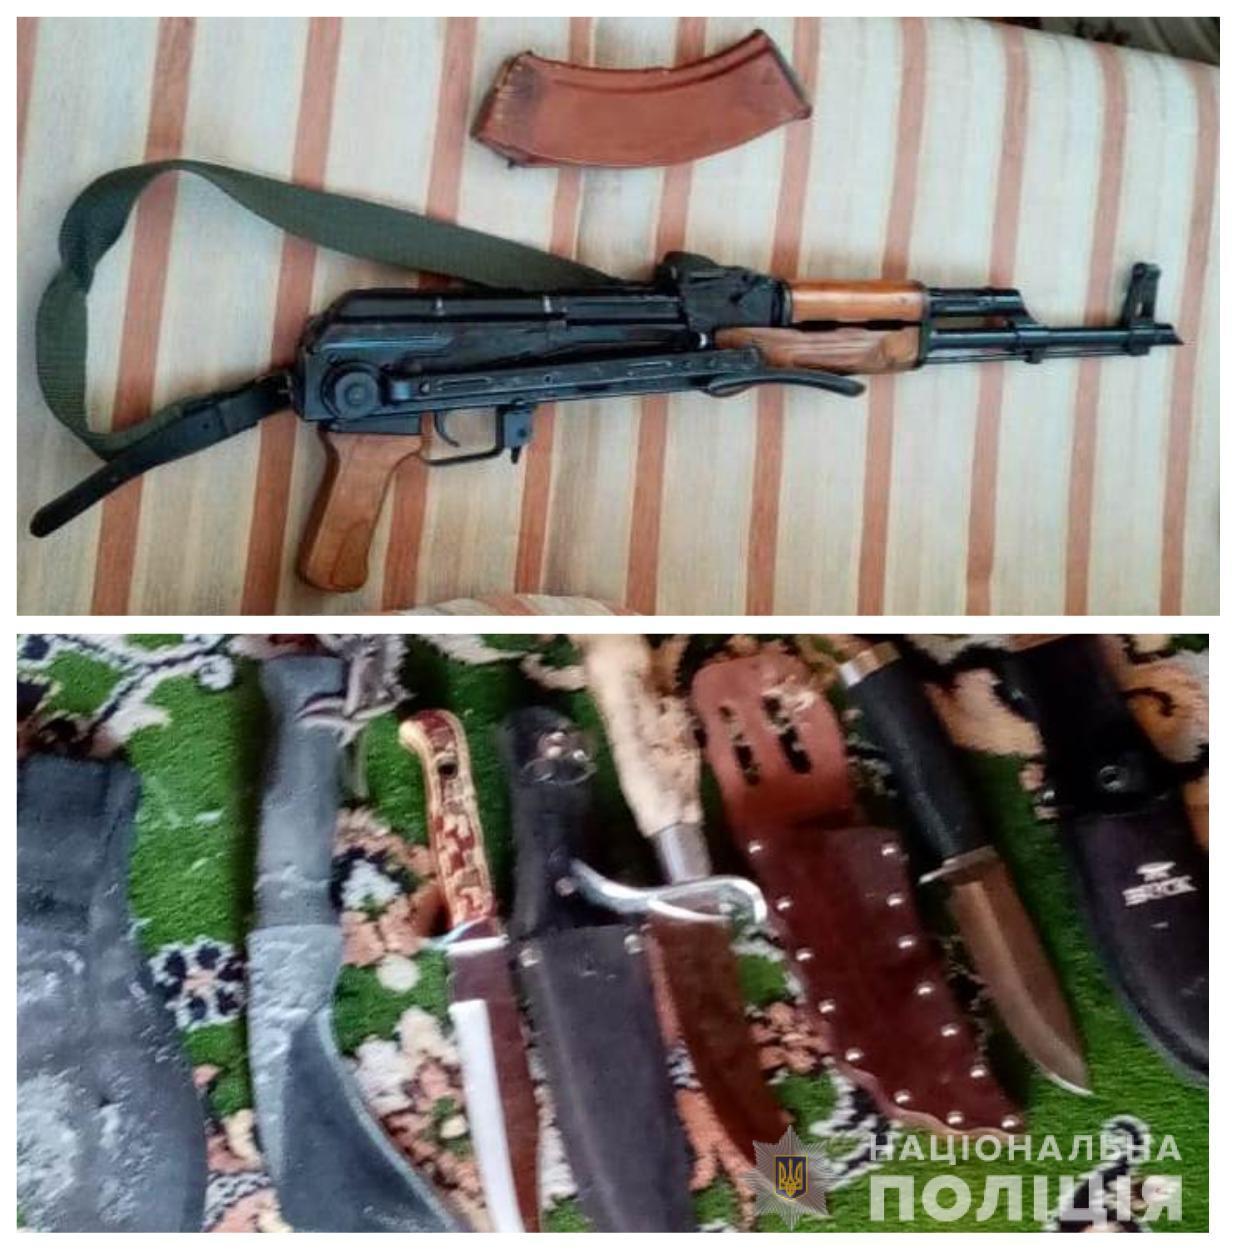 Правоохоронці викрили двох жителів Овідіопольського району в незаконному поводженні зі зброєю та збуті наркотичних речовин